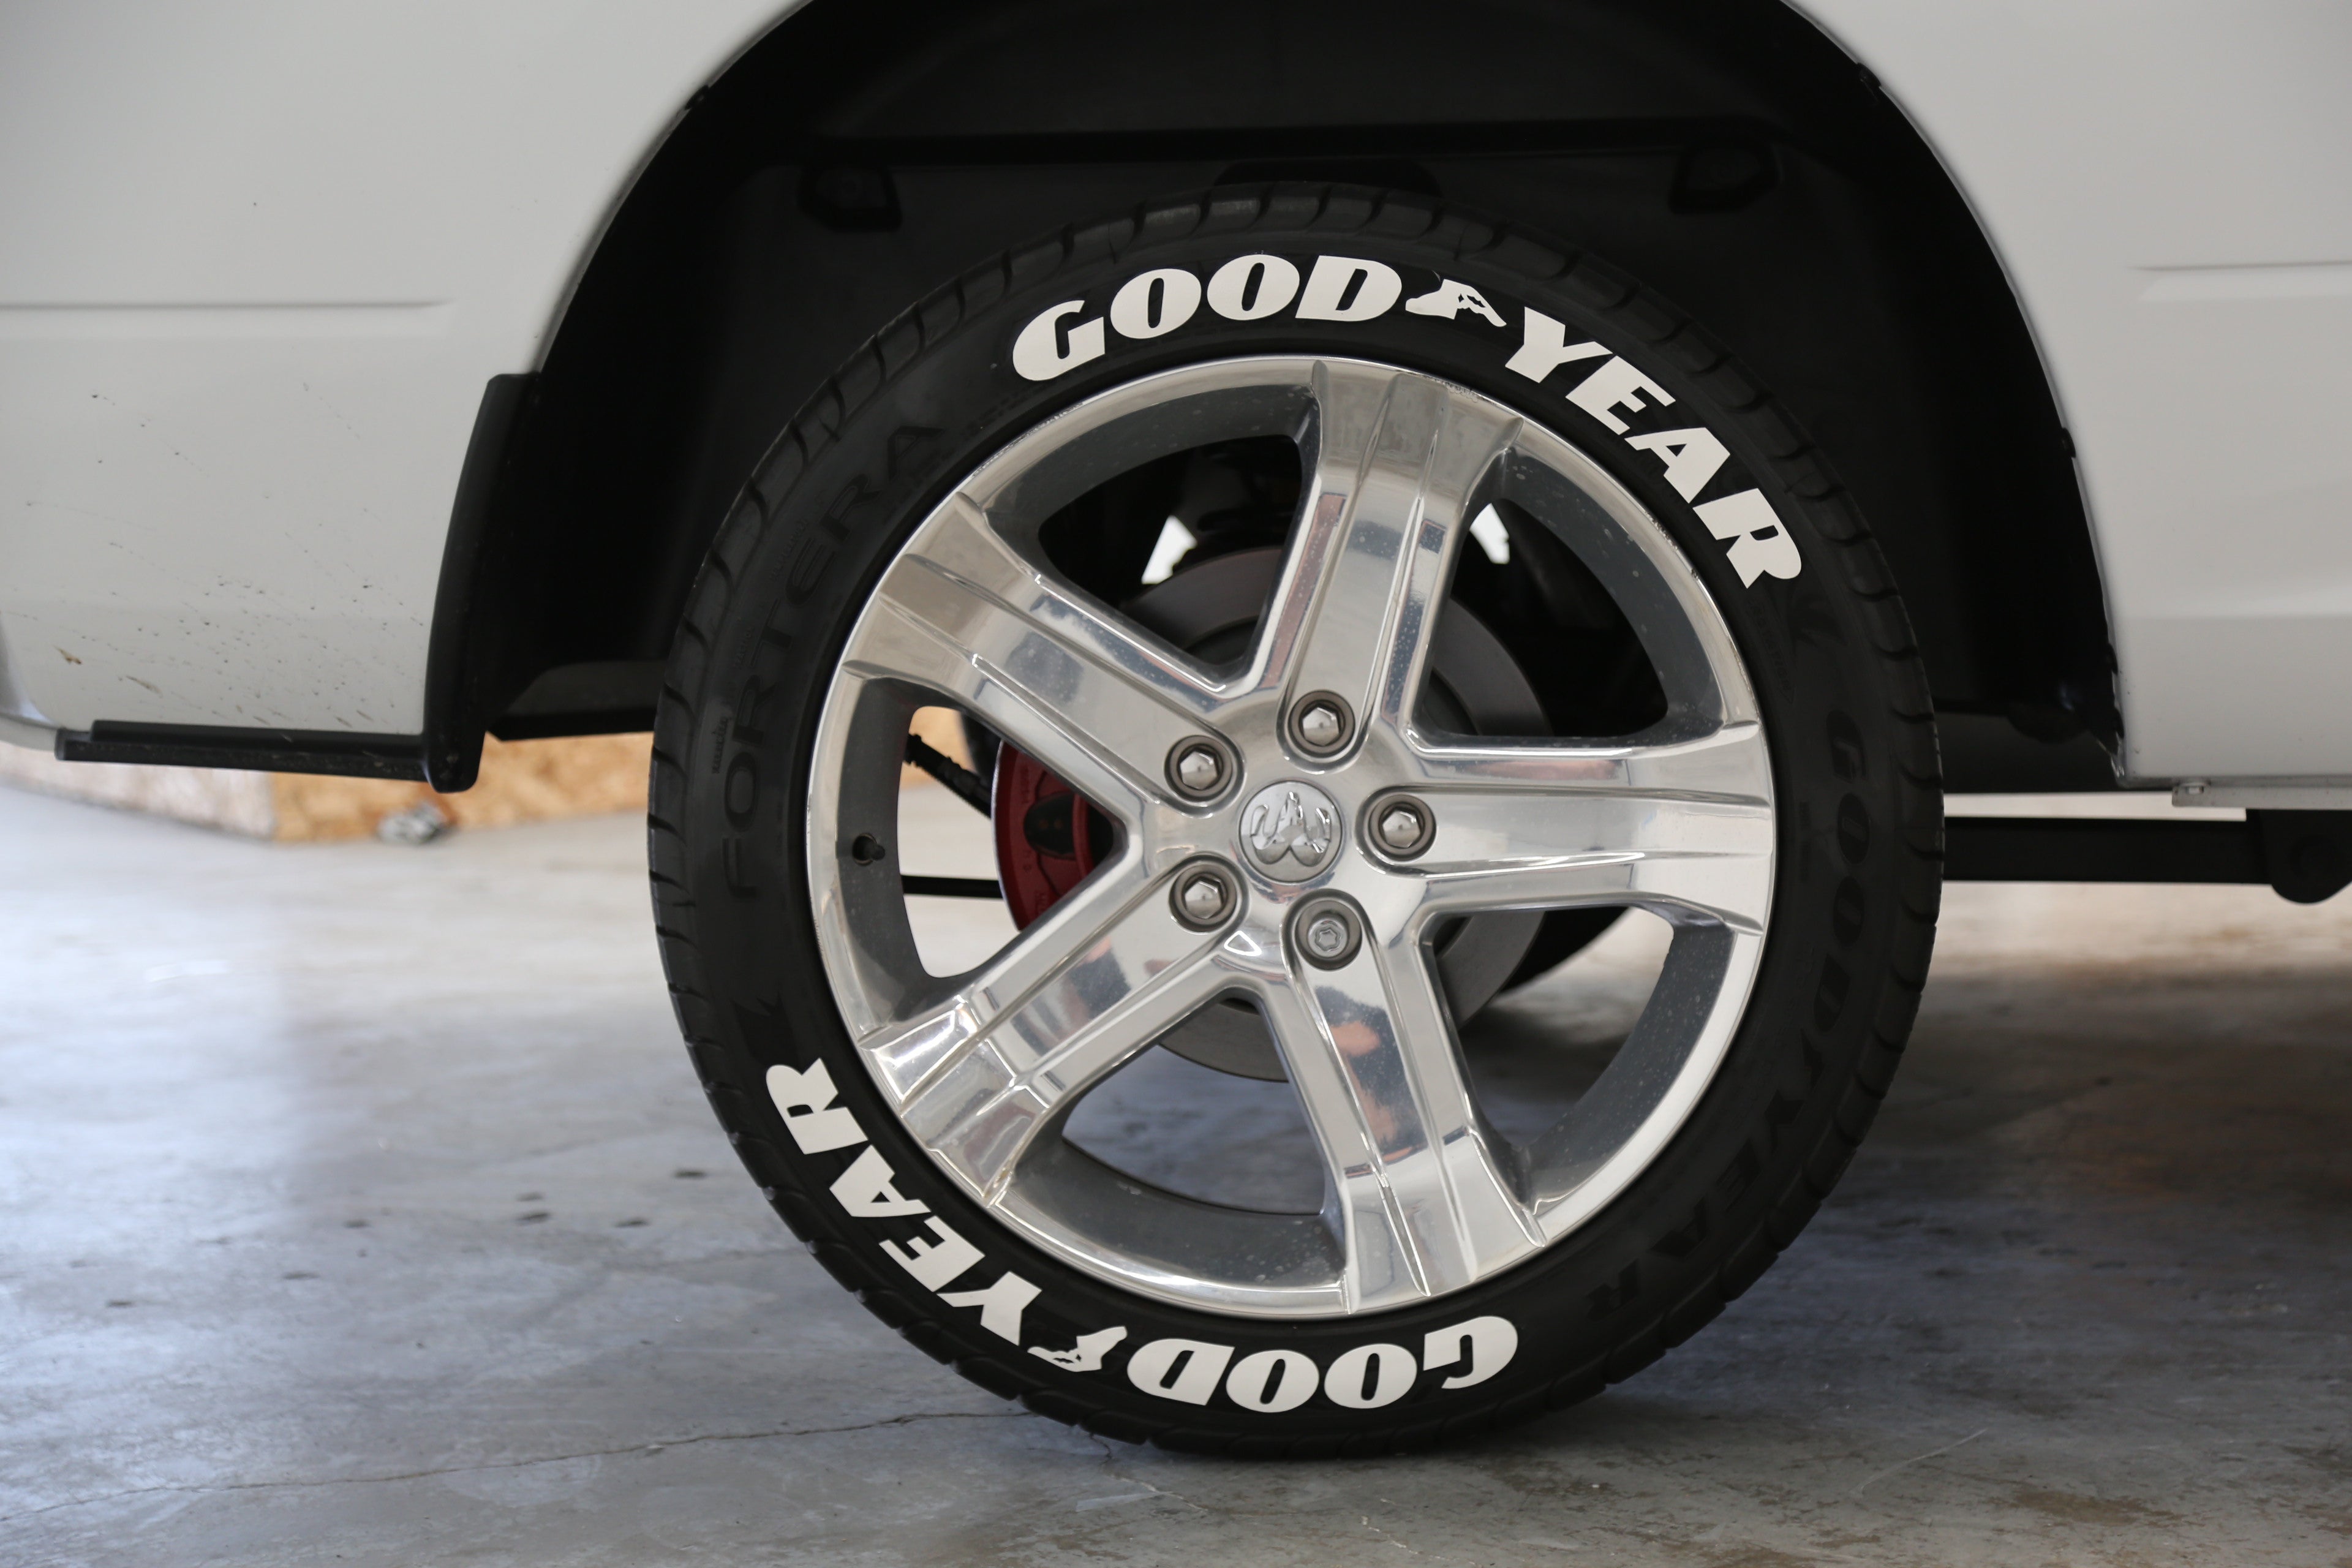  Tire Stickers Goodyear - Accessoire d'appoint pour Le